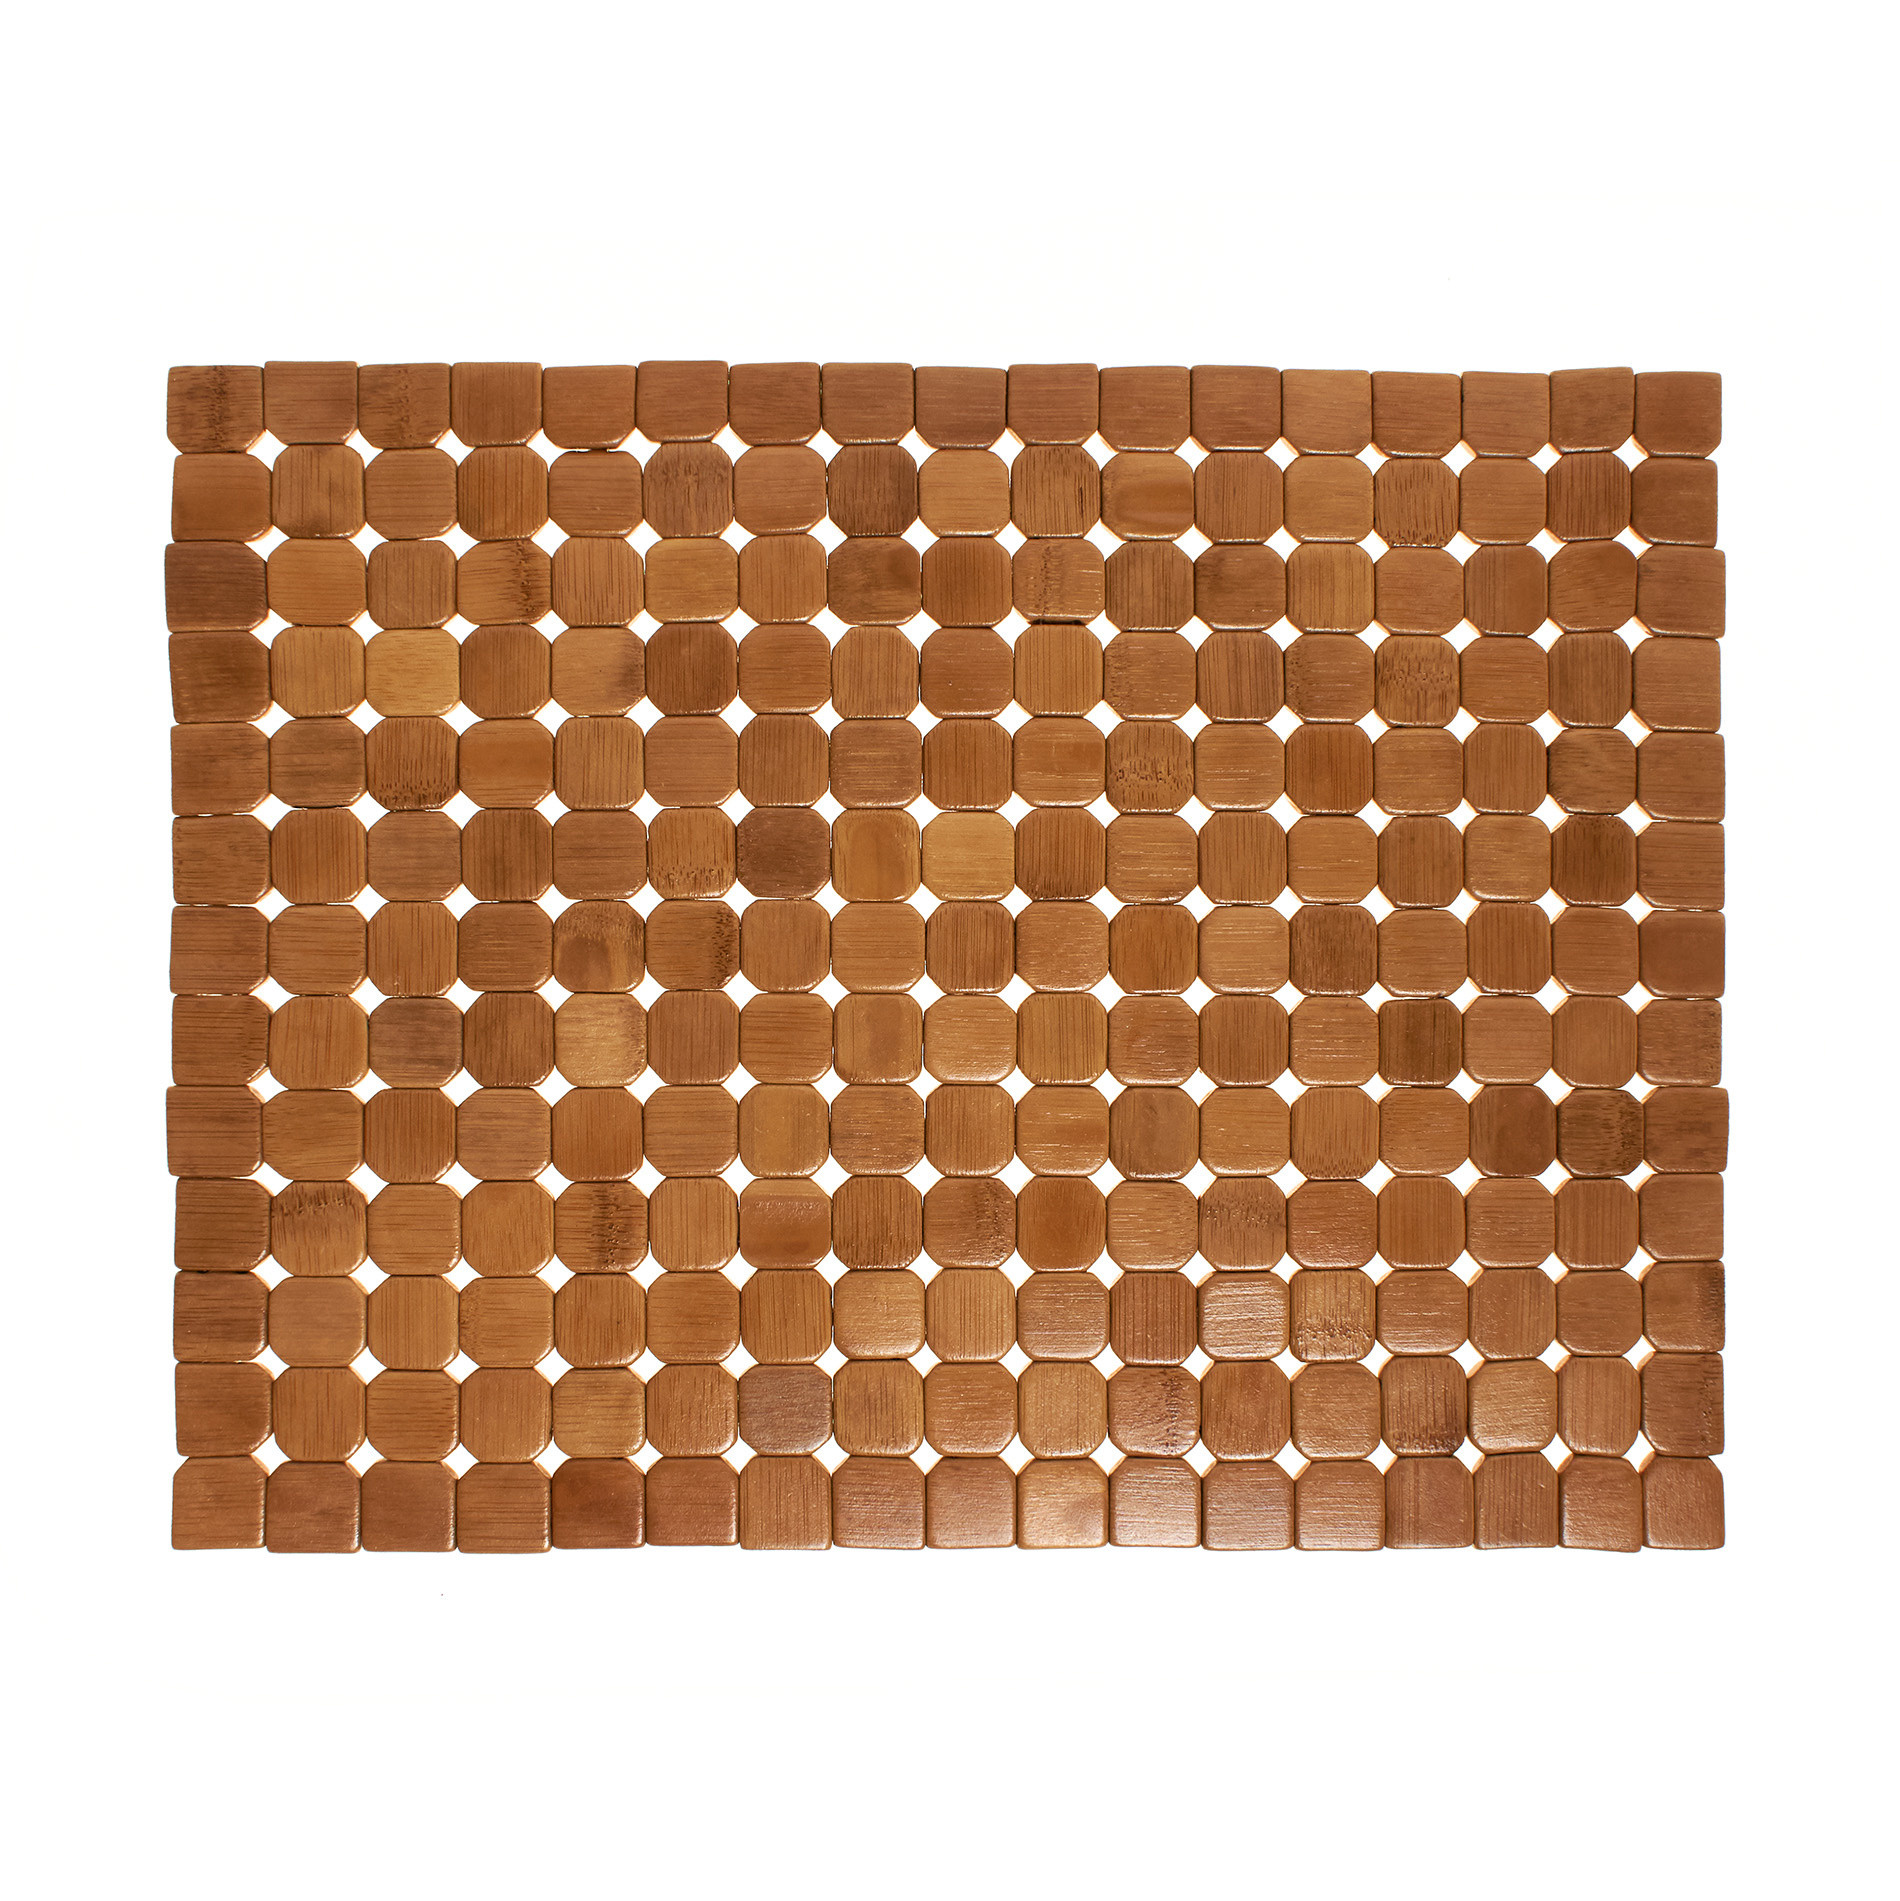 Расписной бамбуковый коврик для столовых приборов Coincasa, светло-коричневый